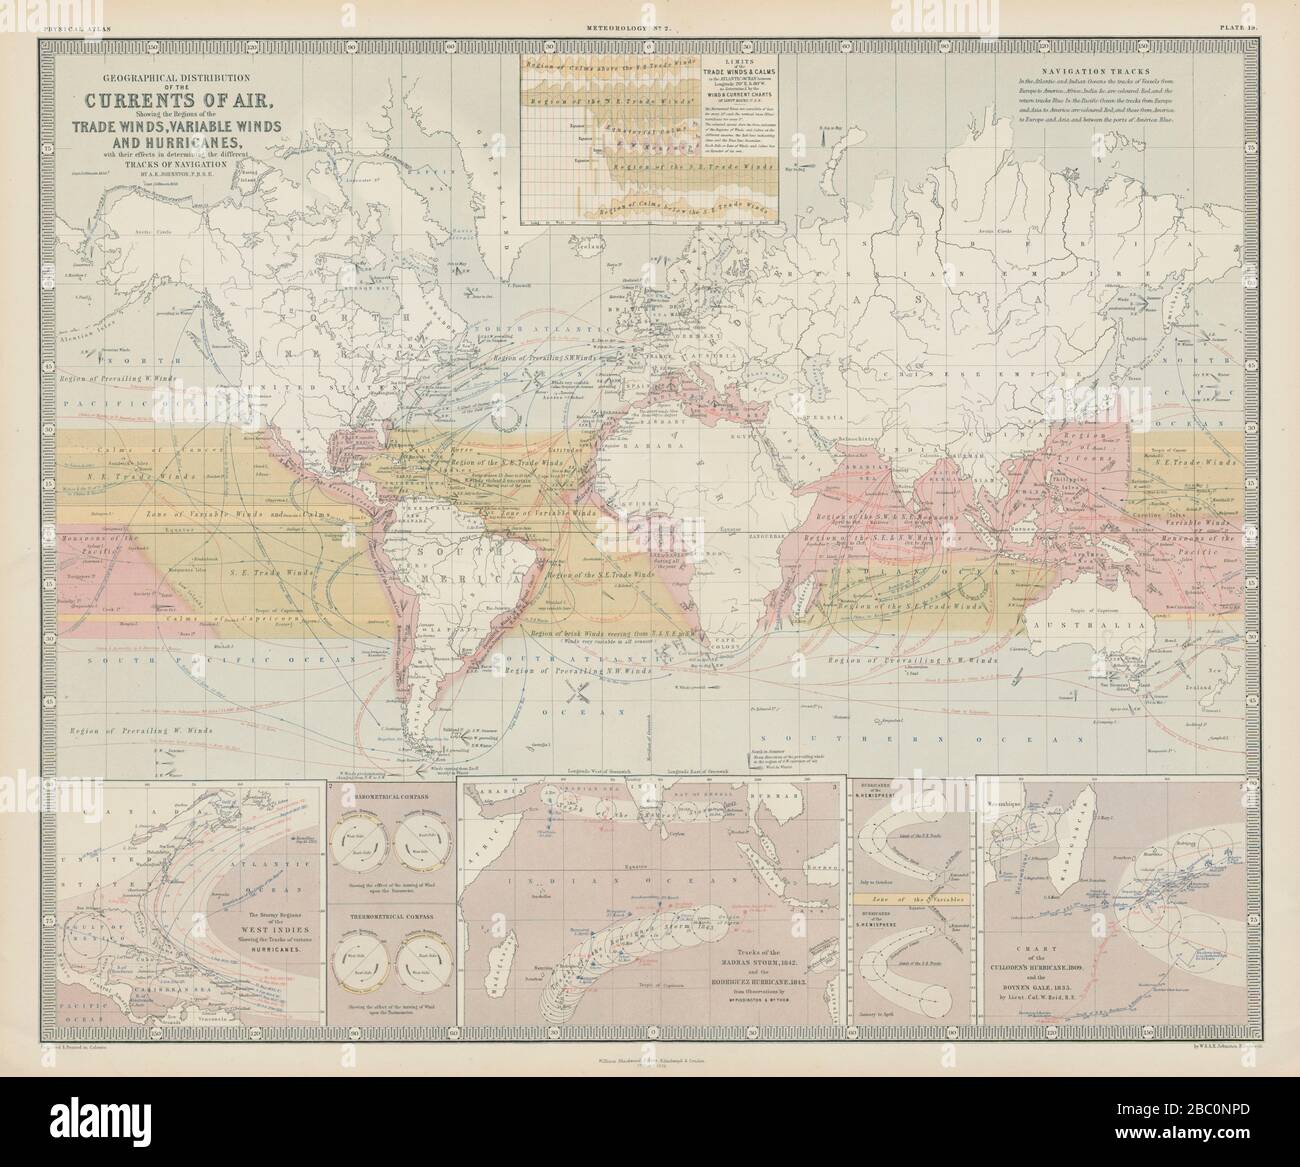 Distribuzione geografica delle correnti d'aria. Commercio venti & uragani 1856 vecchia mappa Foto Stock